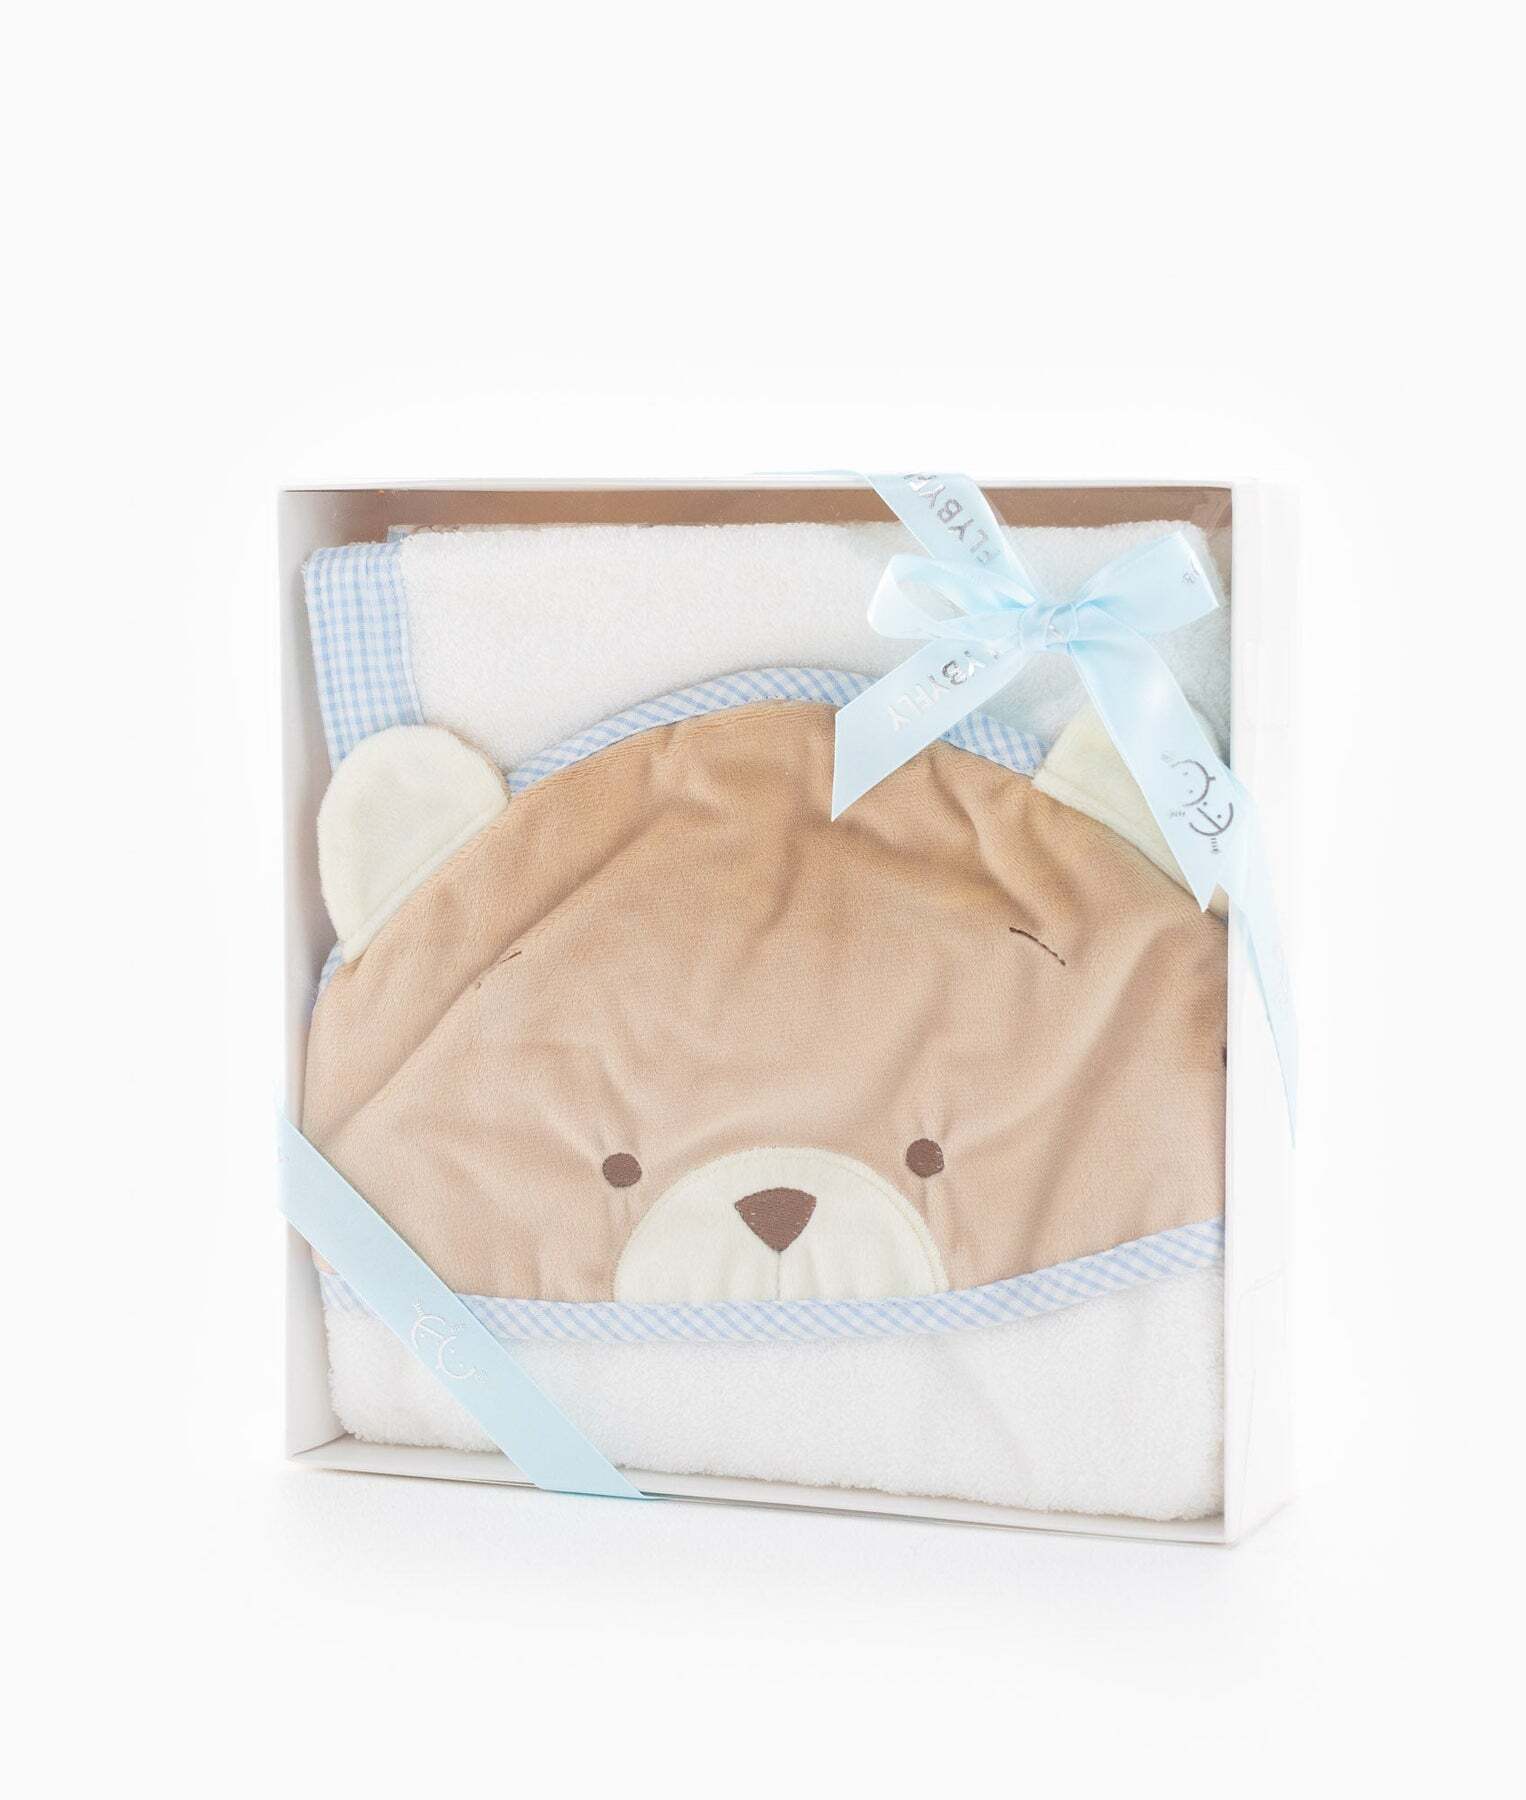 baby-bear-bath-towel-blue-364_1800x1800